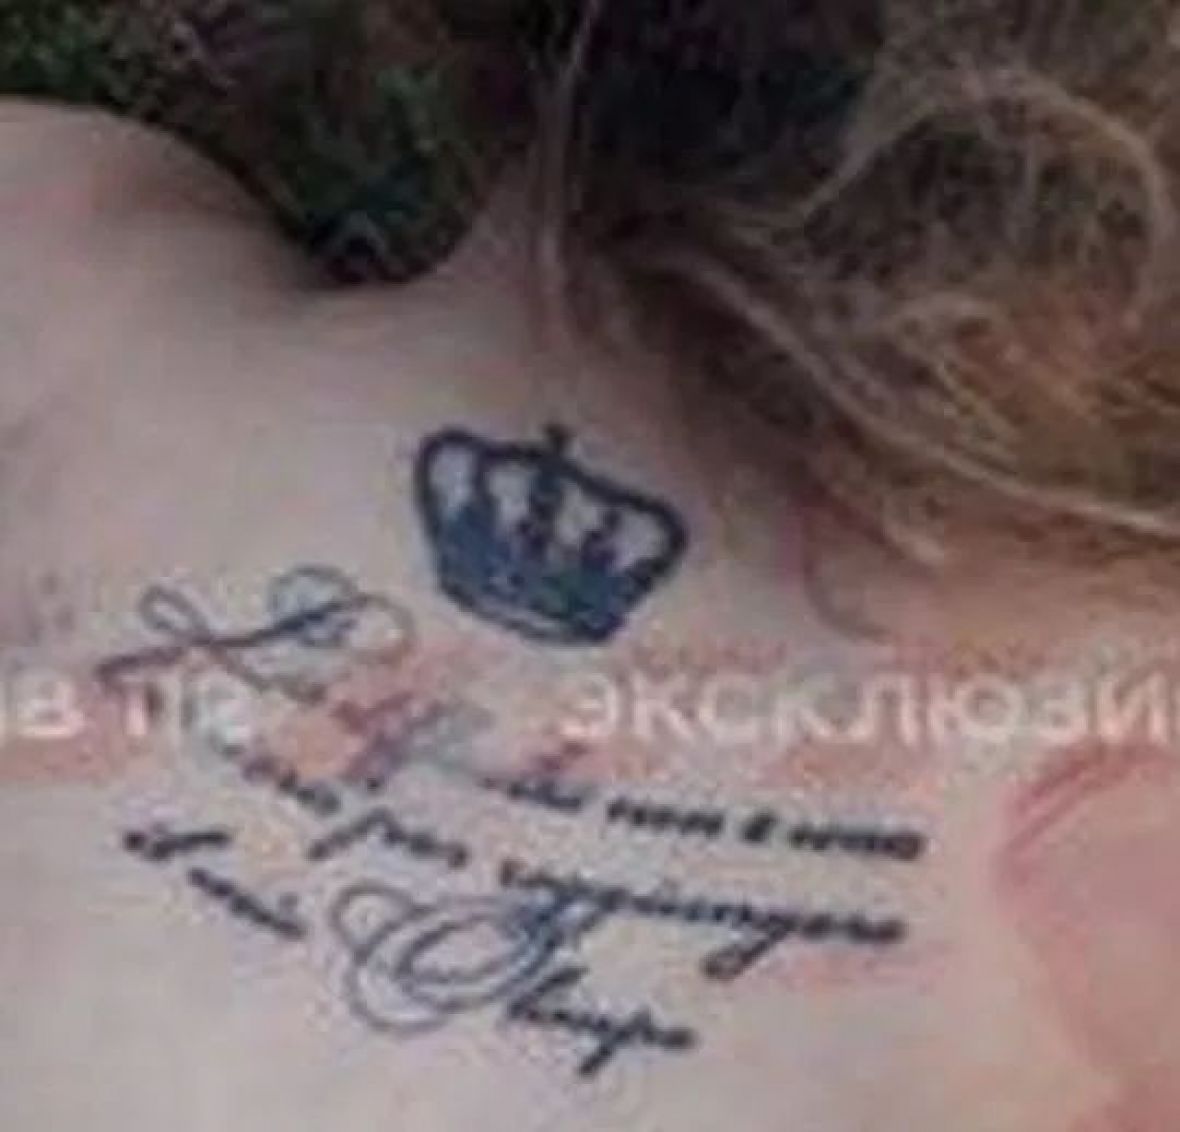 Tetovaža jedne od ubijenih žena - undefined